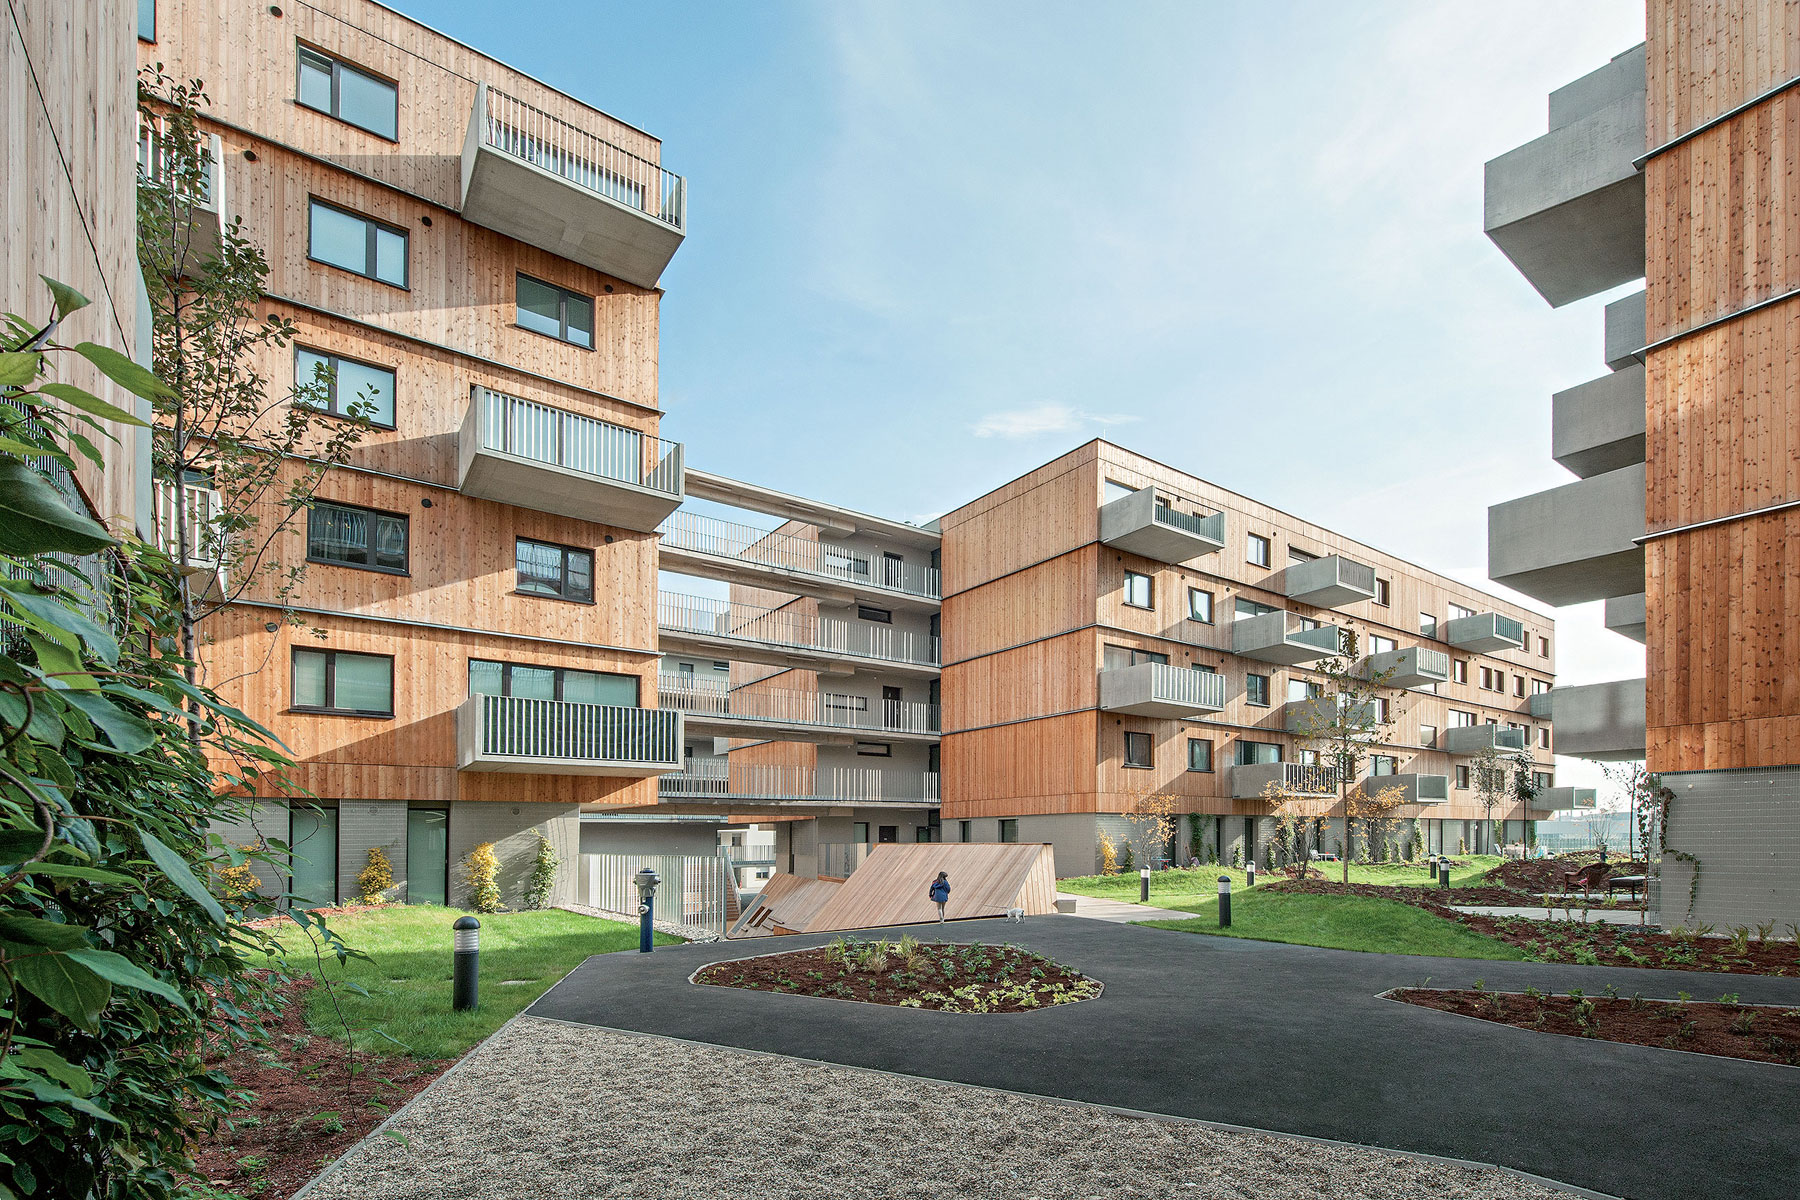 Seestadt Wien-Aspern pripomína množstvo malých drevených domčekov vytvárajúcich jednotlivé apartmány.